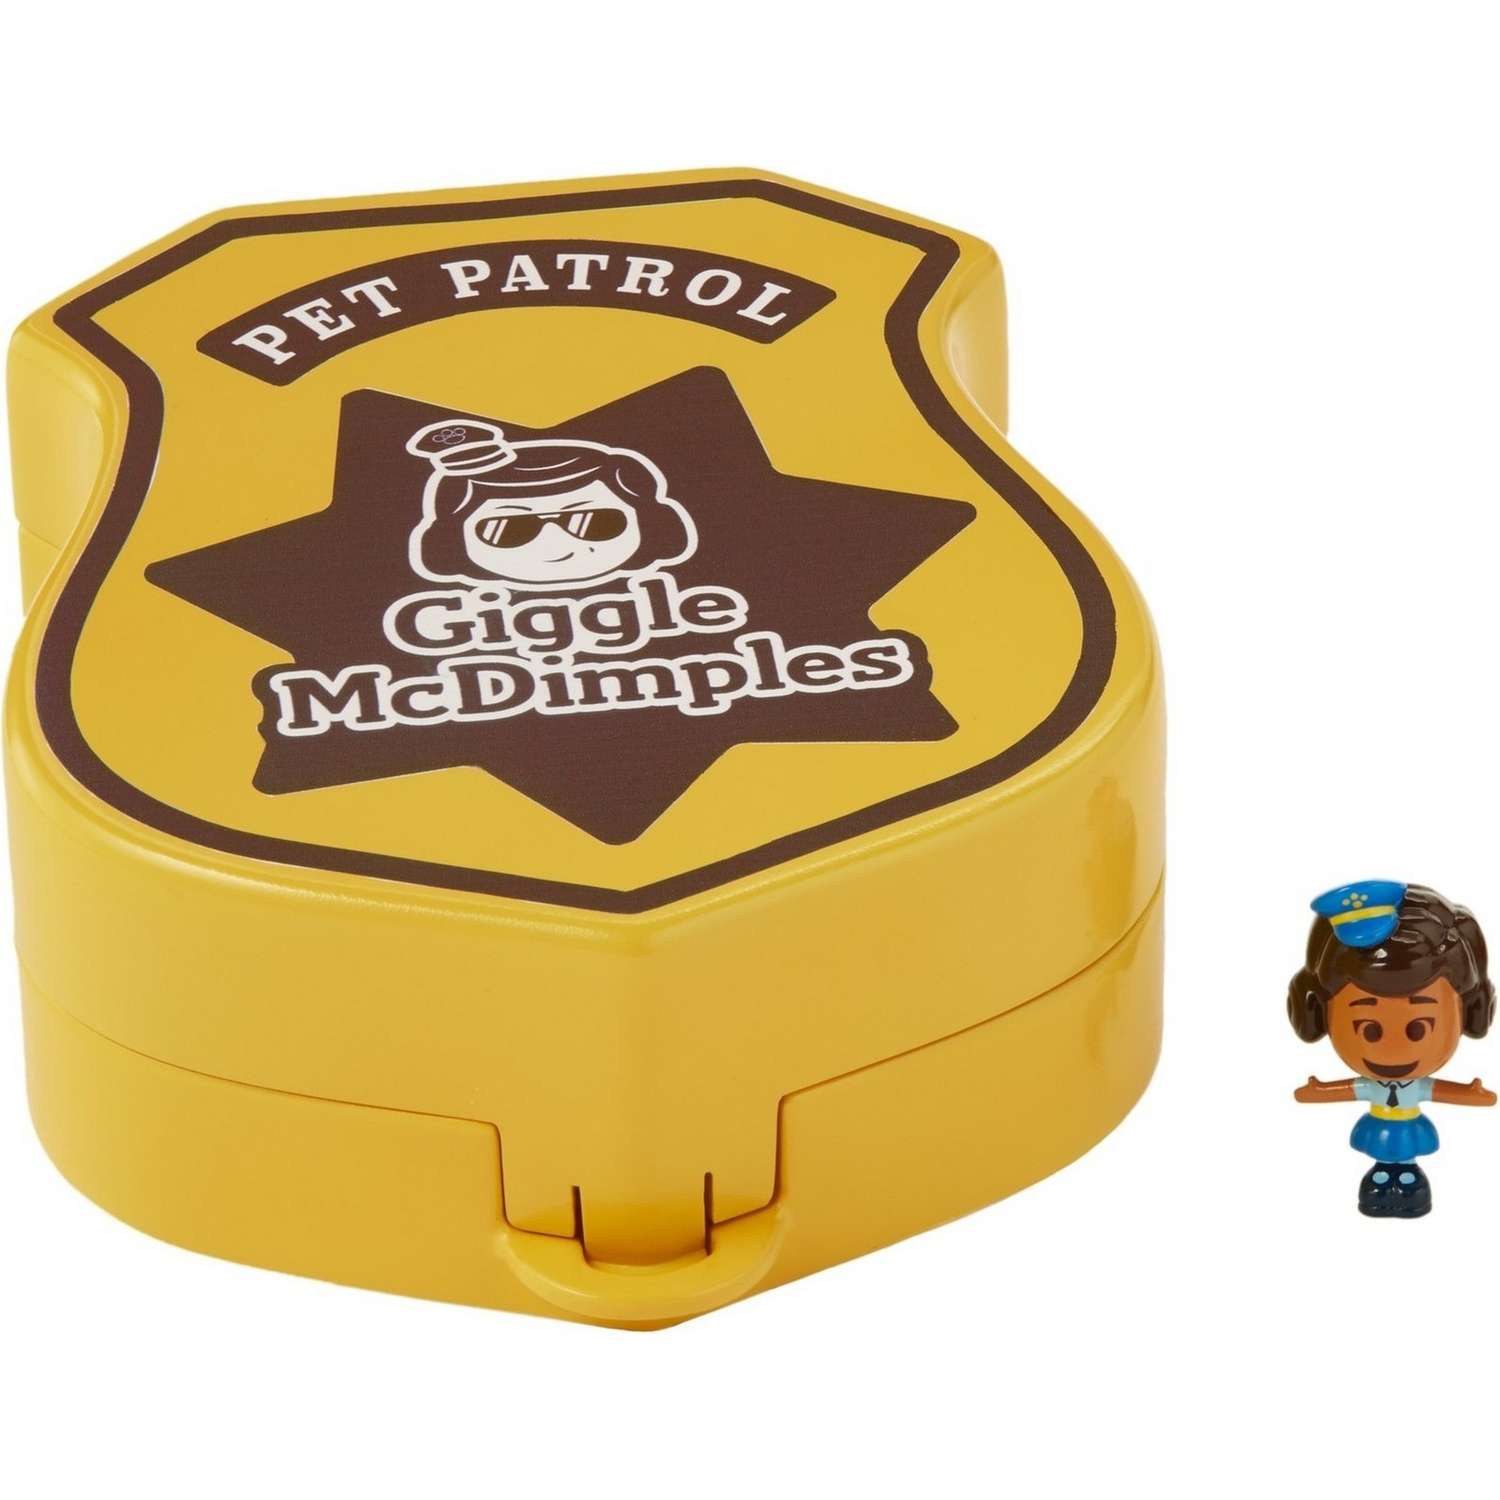 Игровой набор Toy Story 4 Pet Patrol с мини-фигуркой Гиггл МакДимплес GGX49 - фото 3